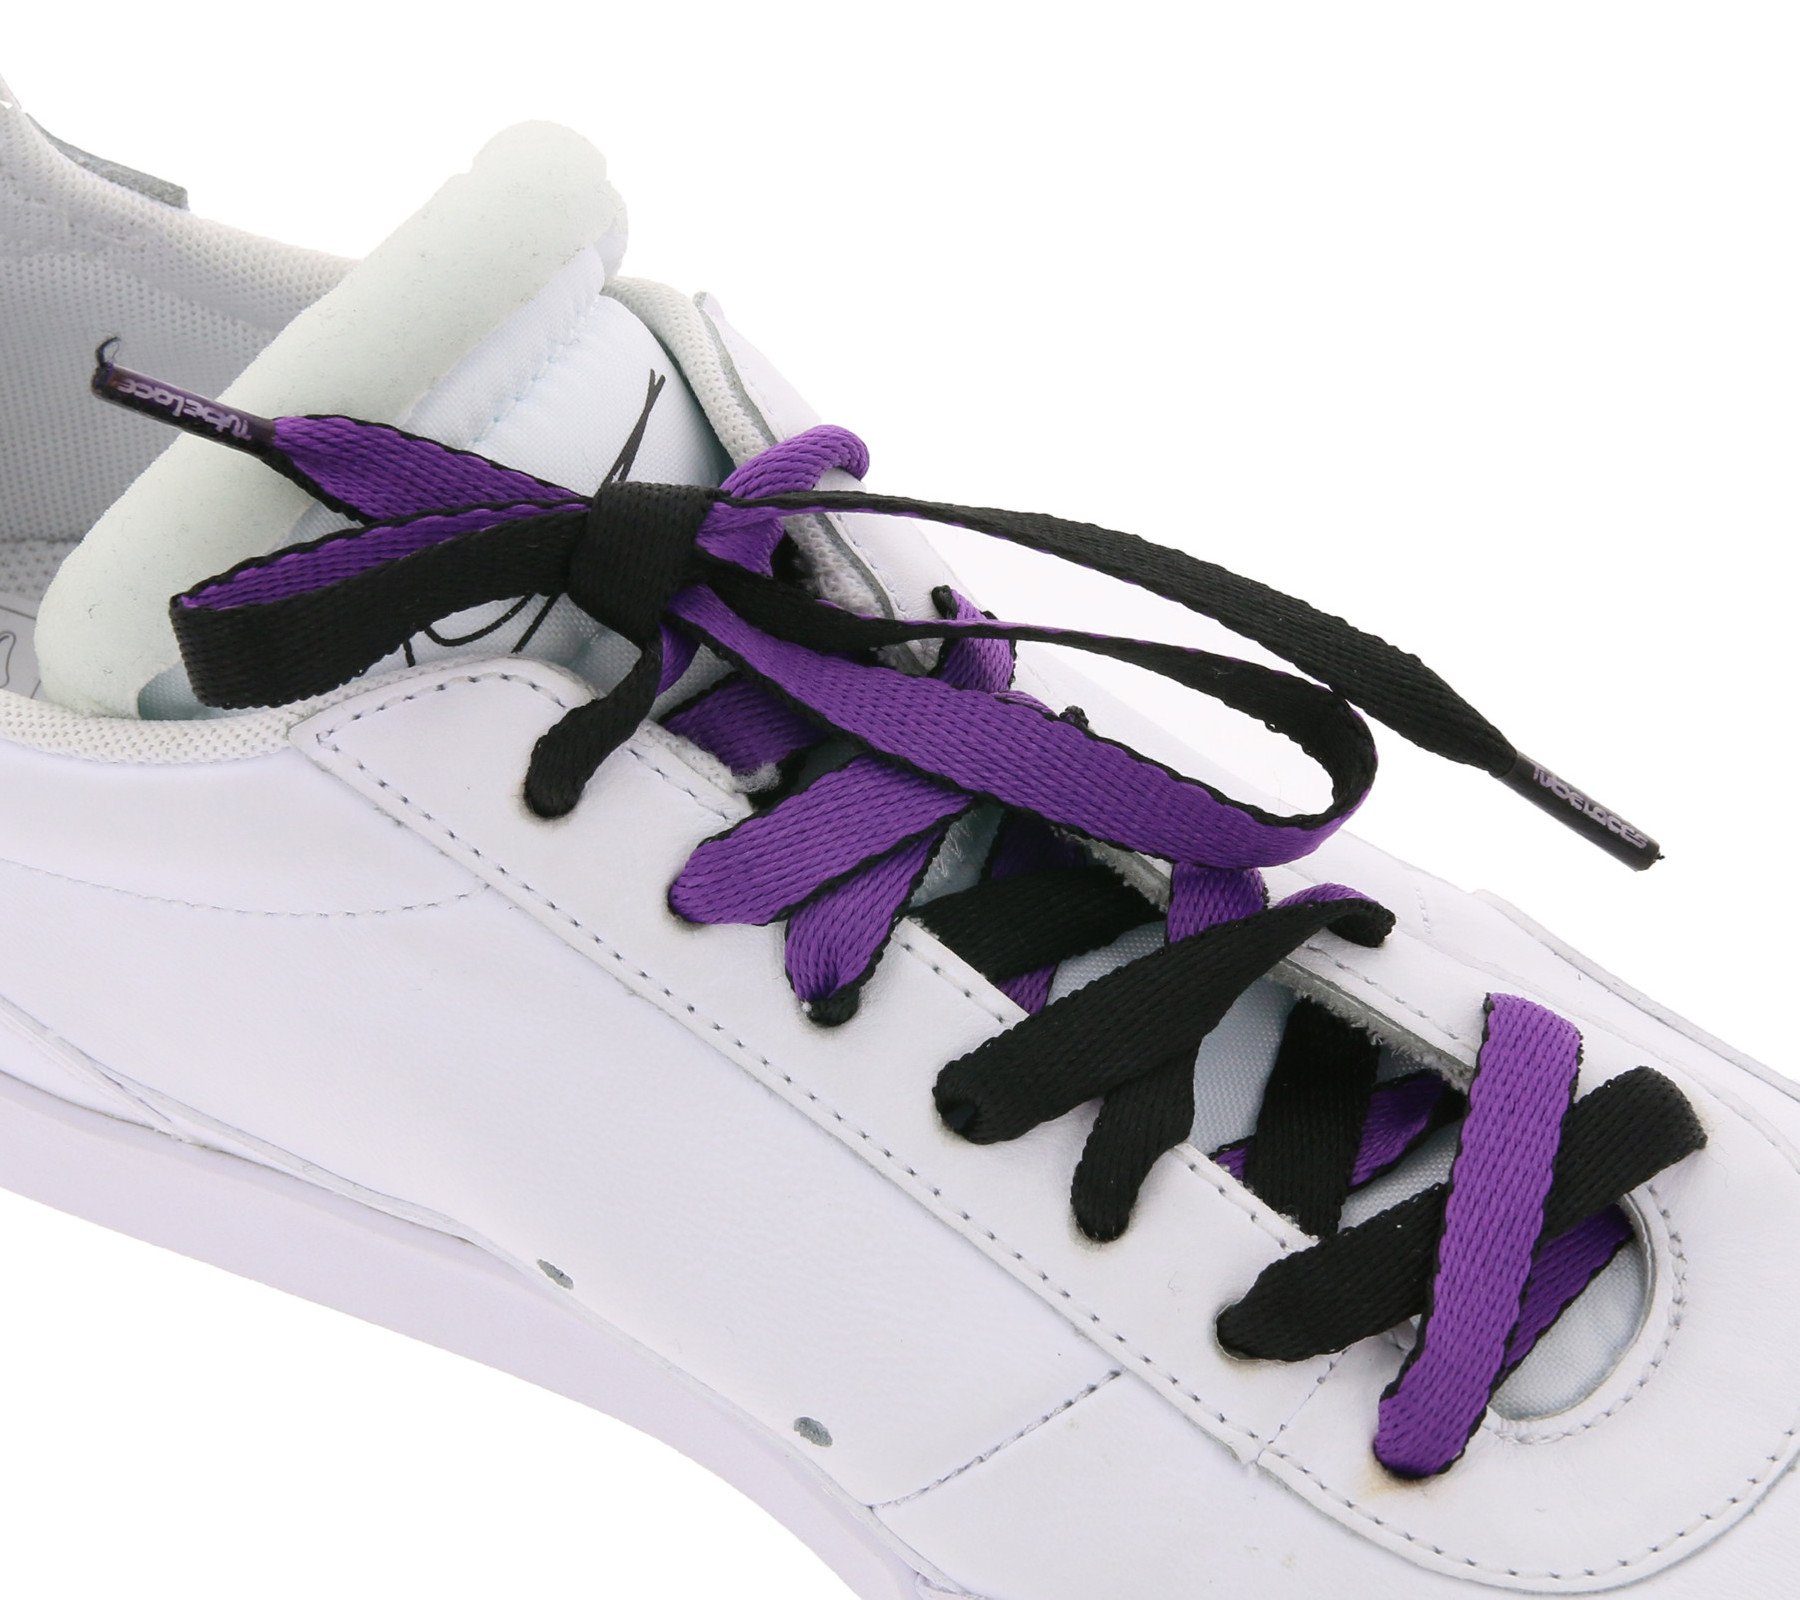 Tubelaces Schnürsenkel TubeLaces Schwarz/Violett Schnürbänder Schnürsenkel Schuhe trendige Schuhbänder